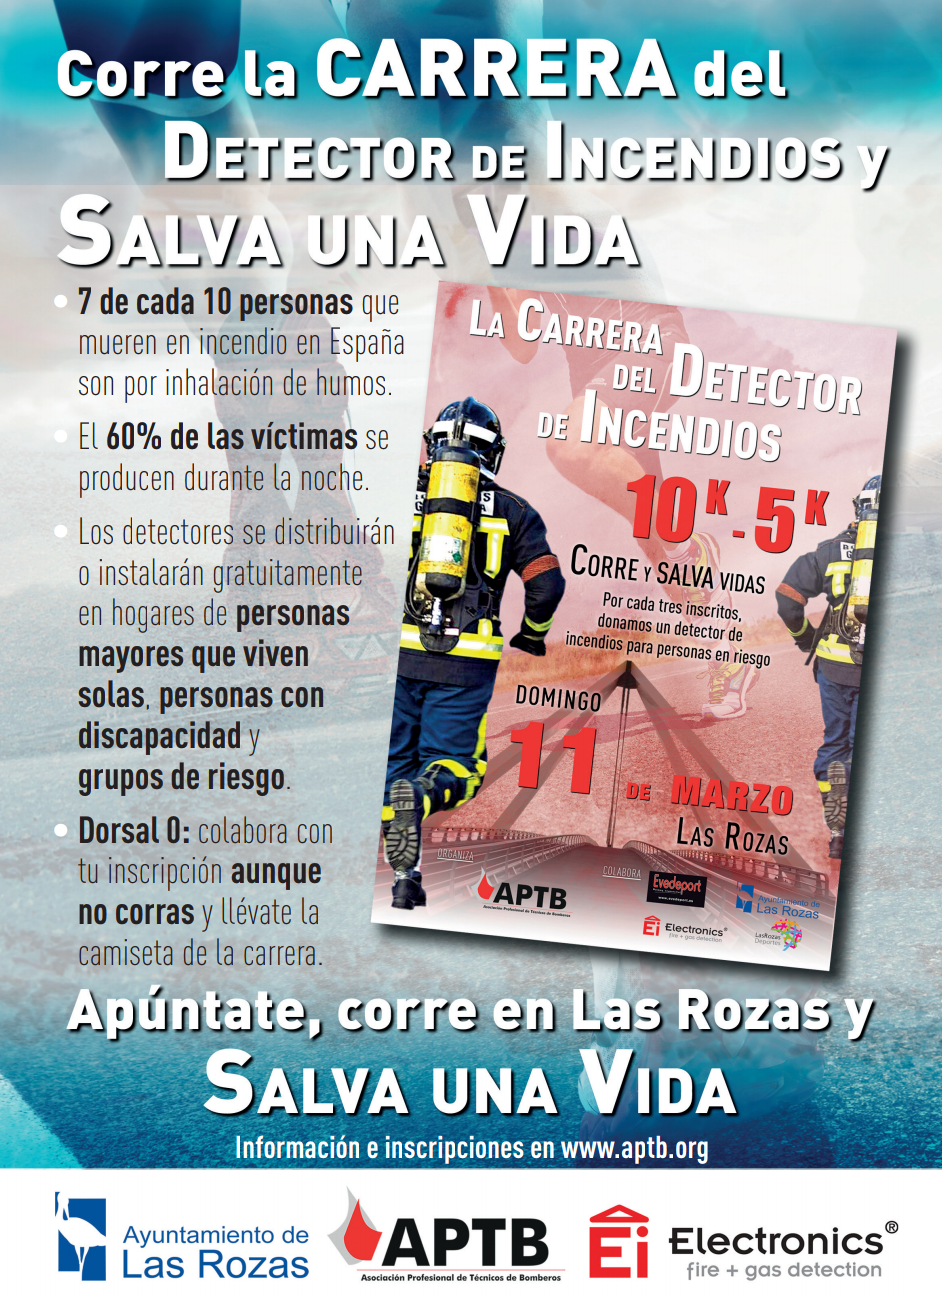 Corre la carrera del #Detector de #Incendios y salva una vida: el día 11 de marzo, en Las Rozas @Ayto_Las_Rozas #DetectoresYA